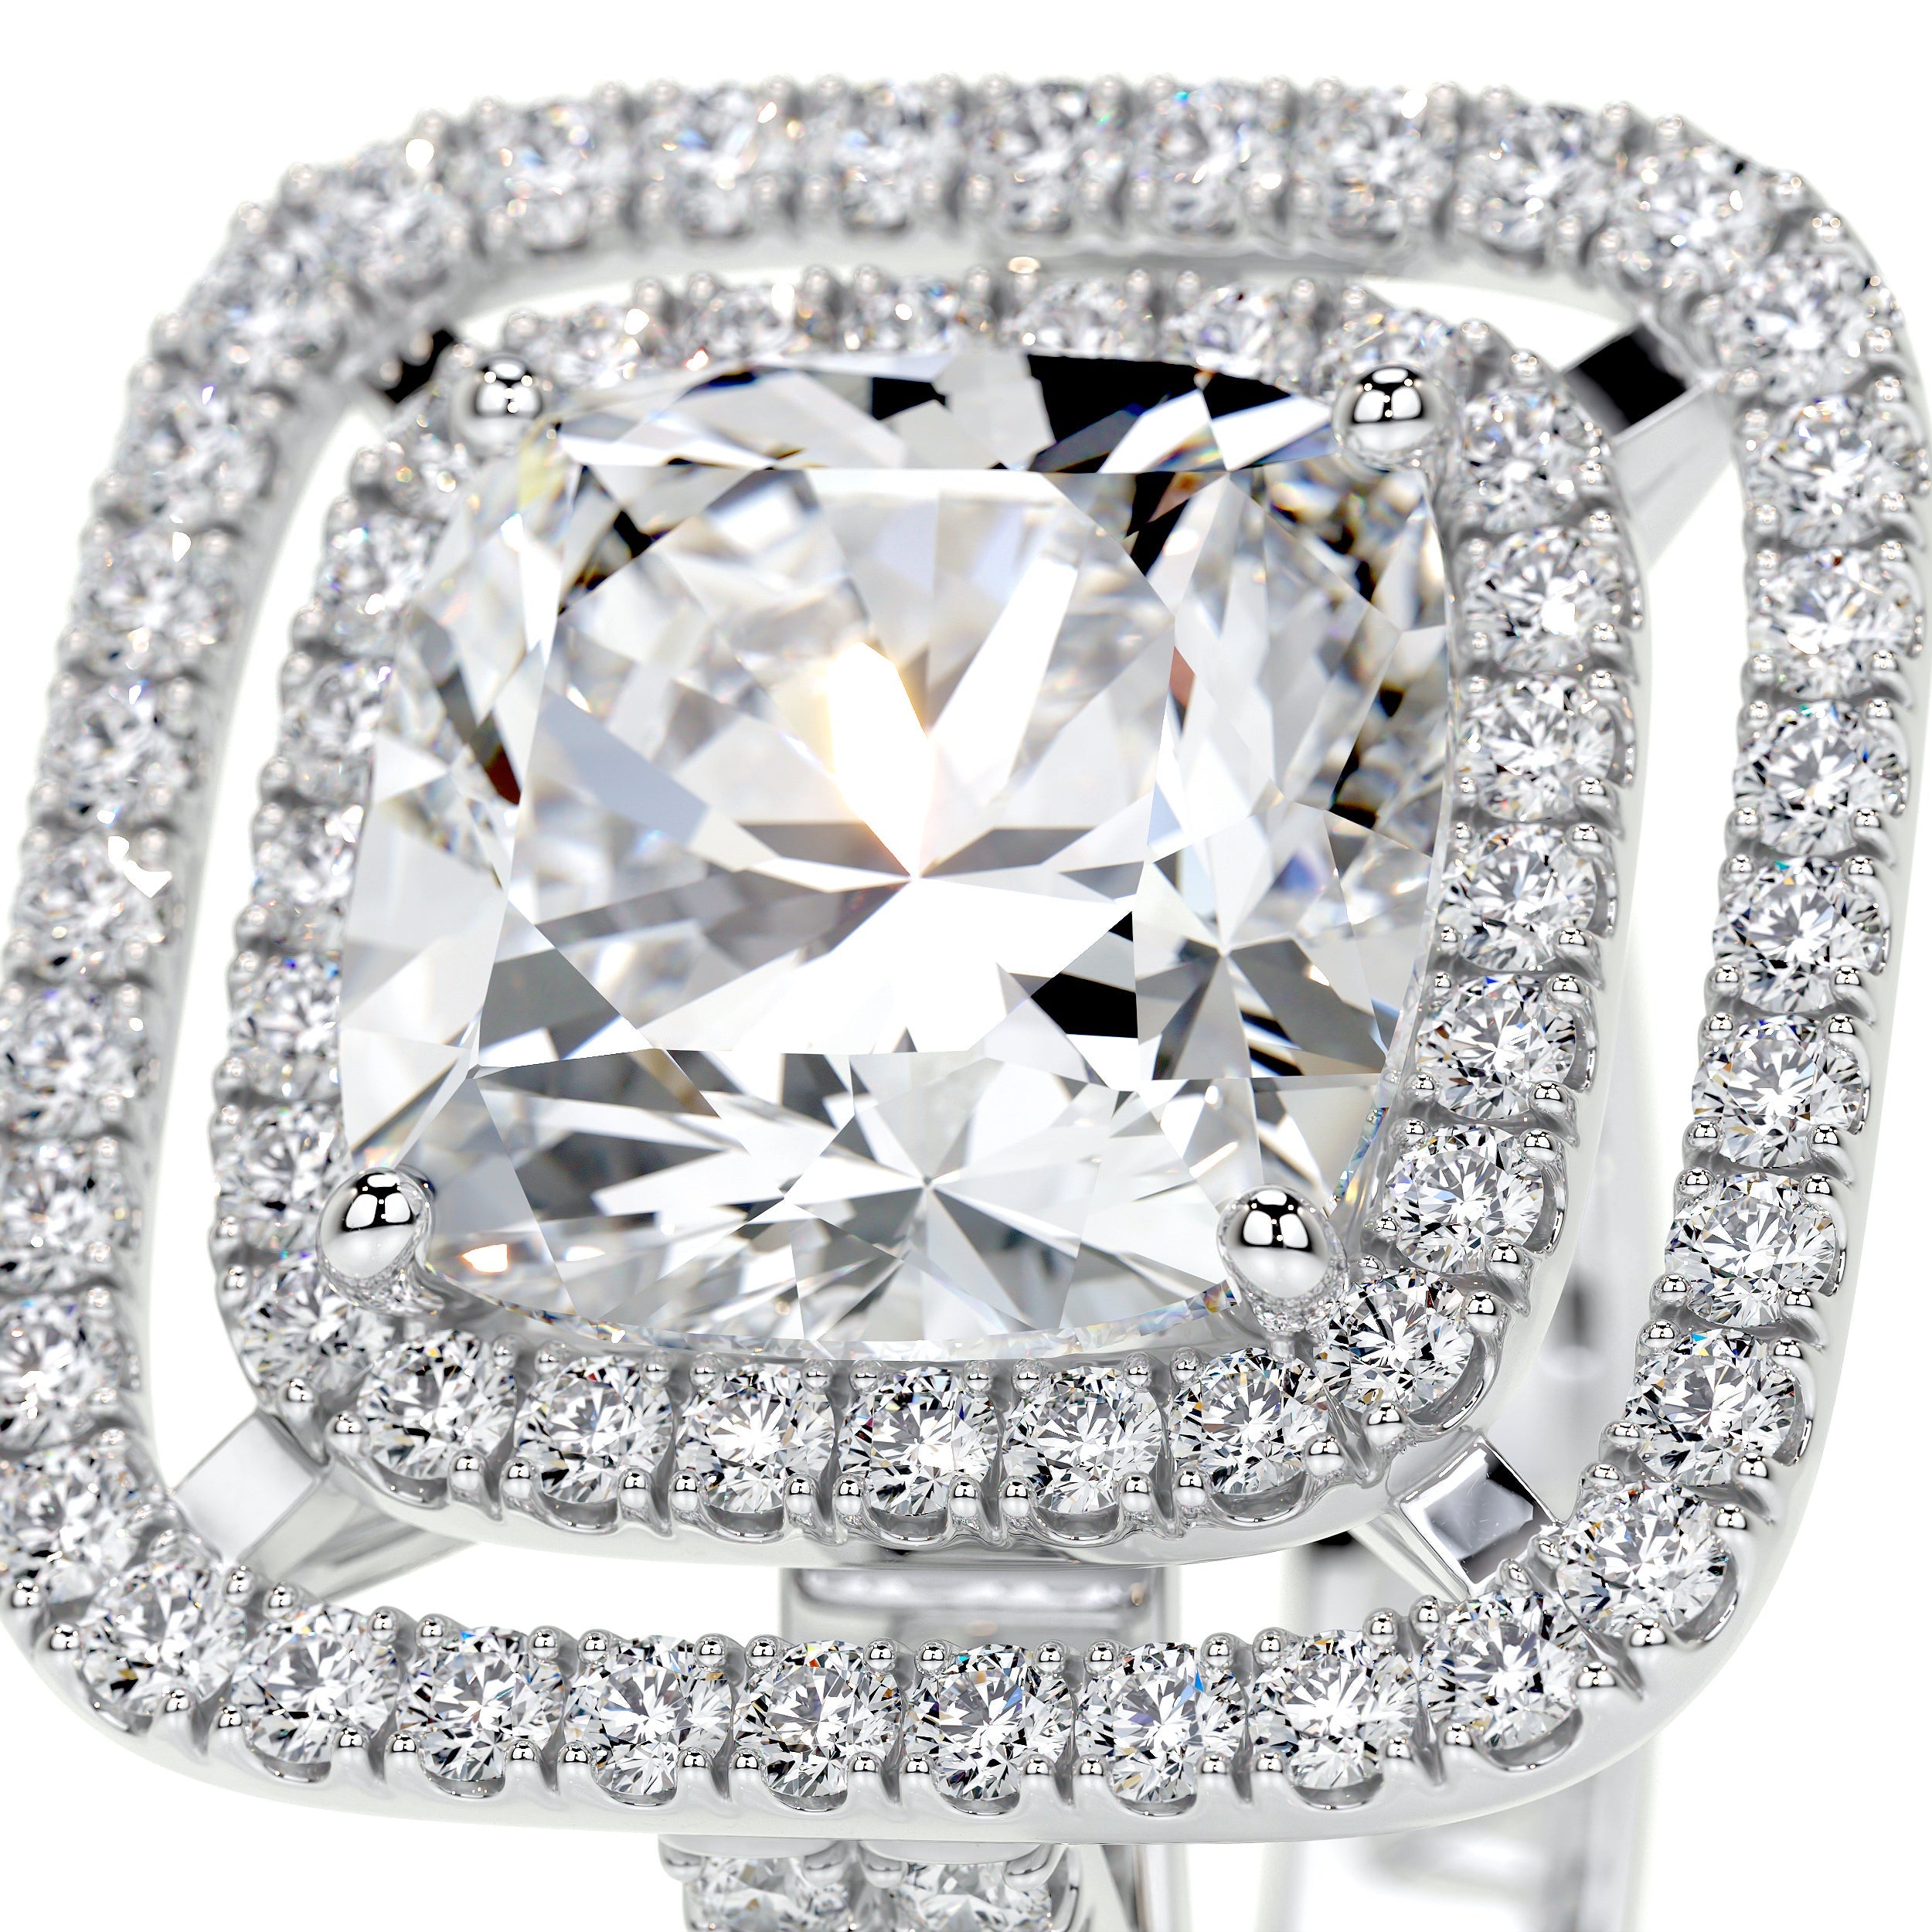 Piper Lab Grown Diamond Ring   (4 Carat) - 18K White Gold